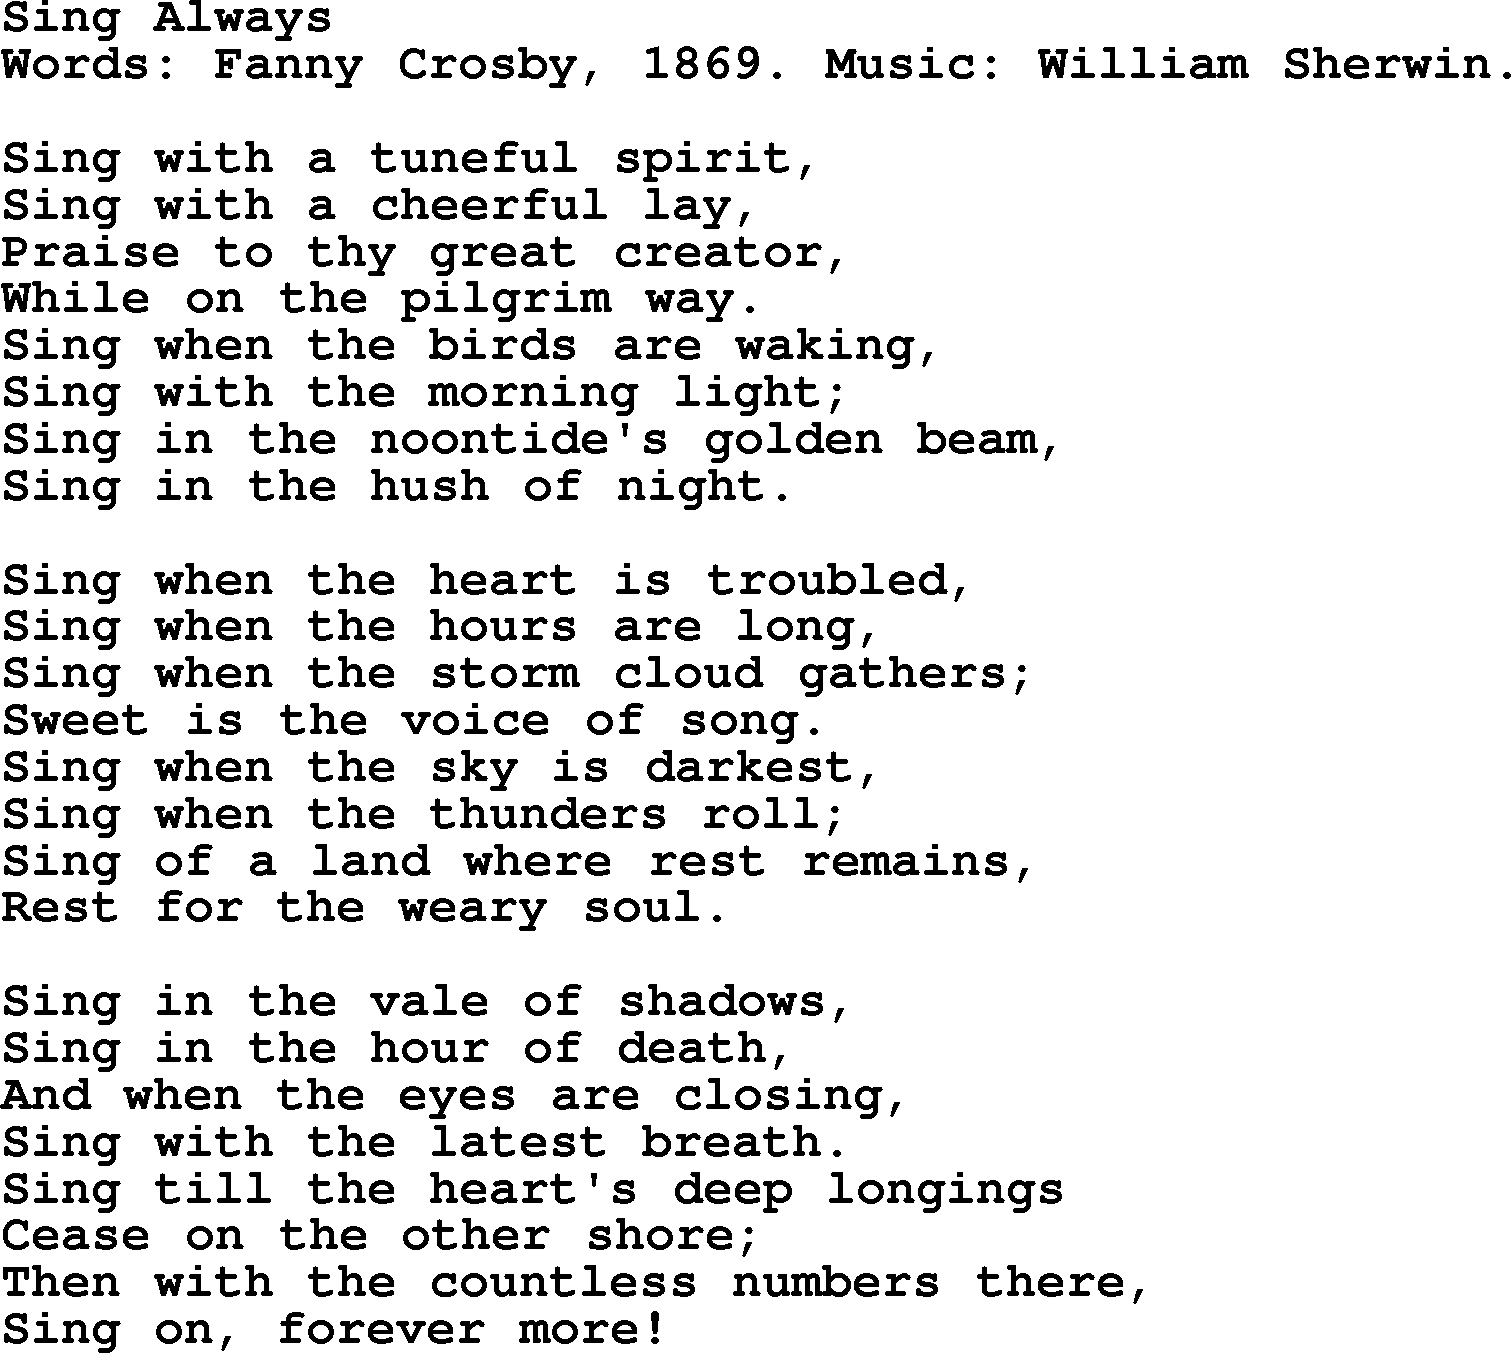 Fanny Crosby song: Sing Always, lyrics